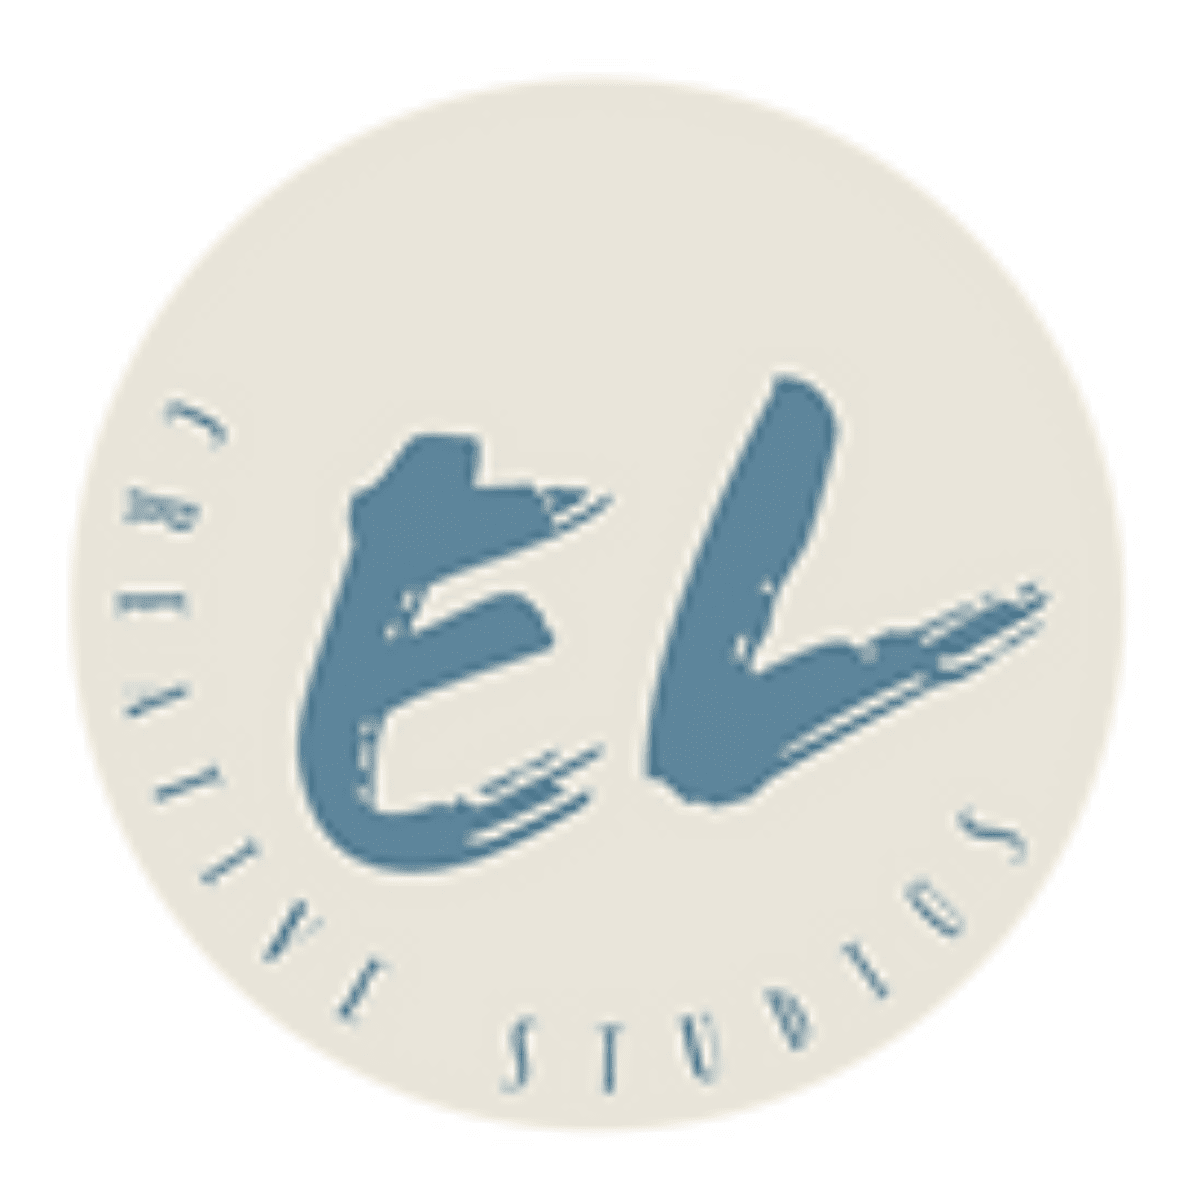 EL Creative Studio Logo